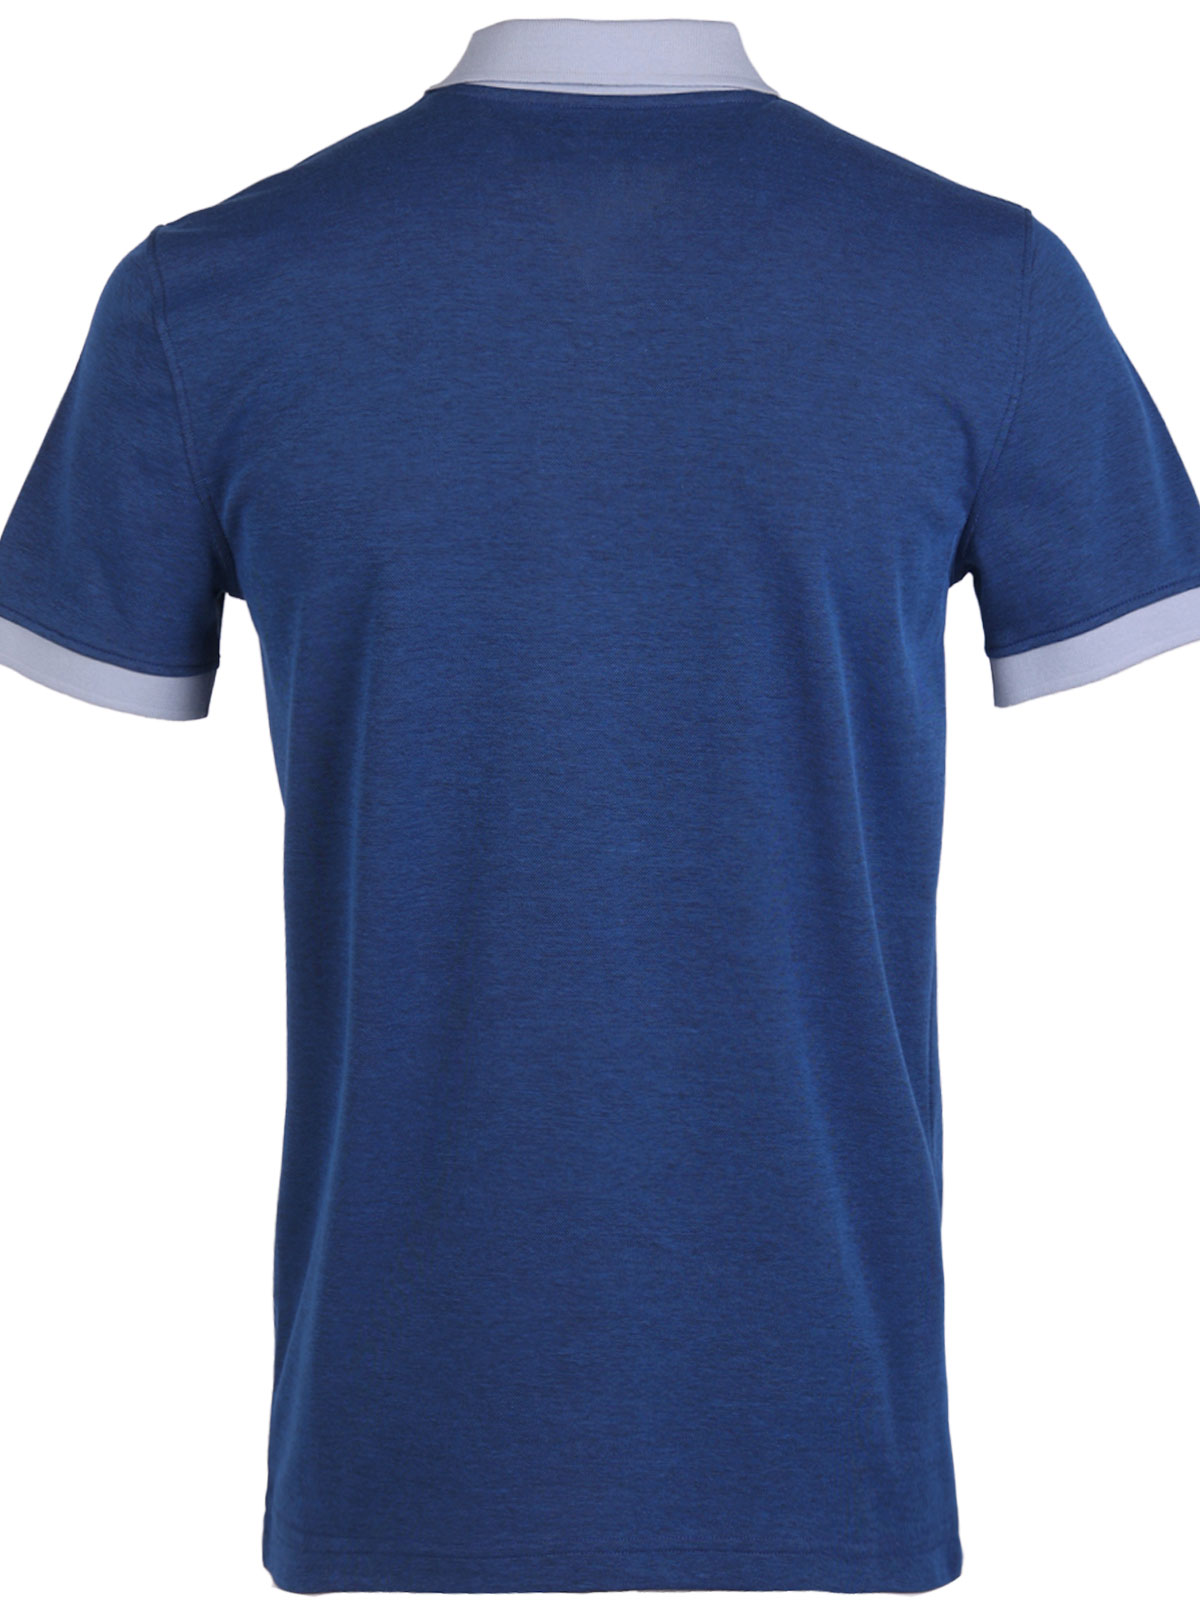 Mens tshirt in blue melange - 93452 € 38.81 img2